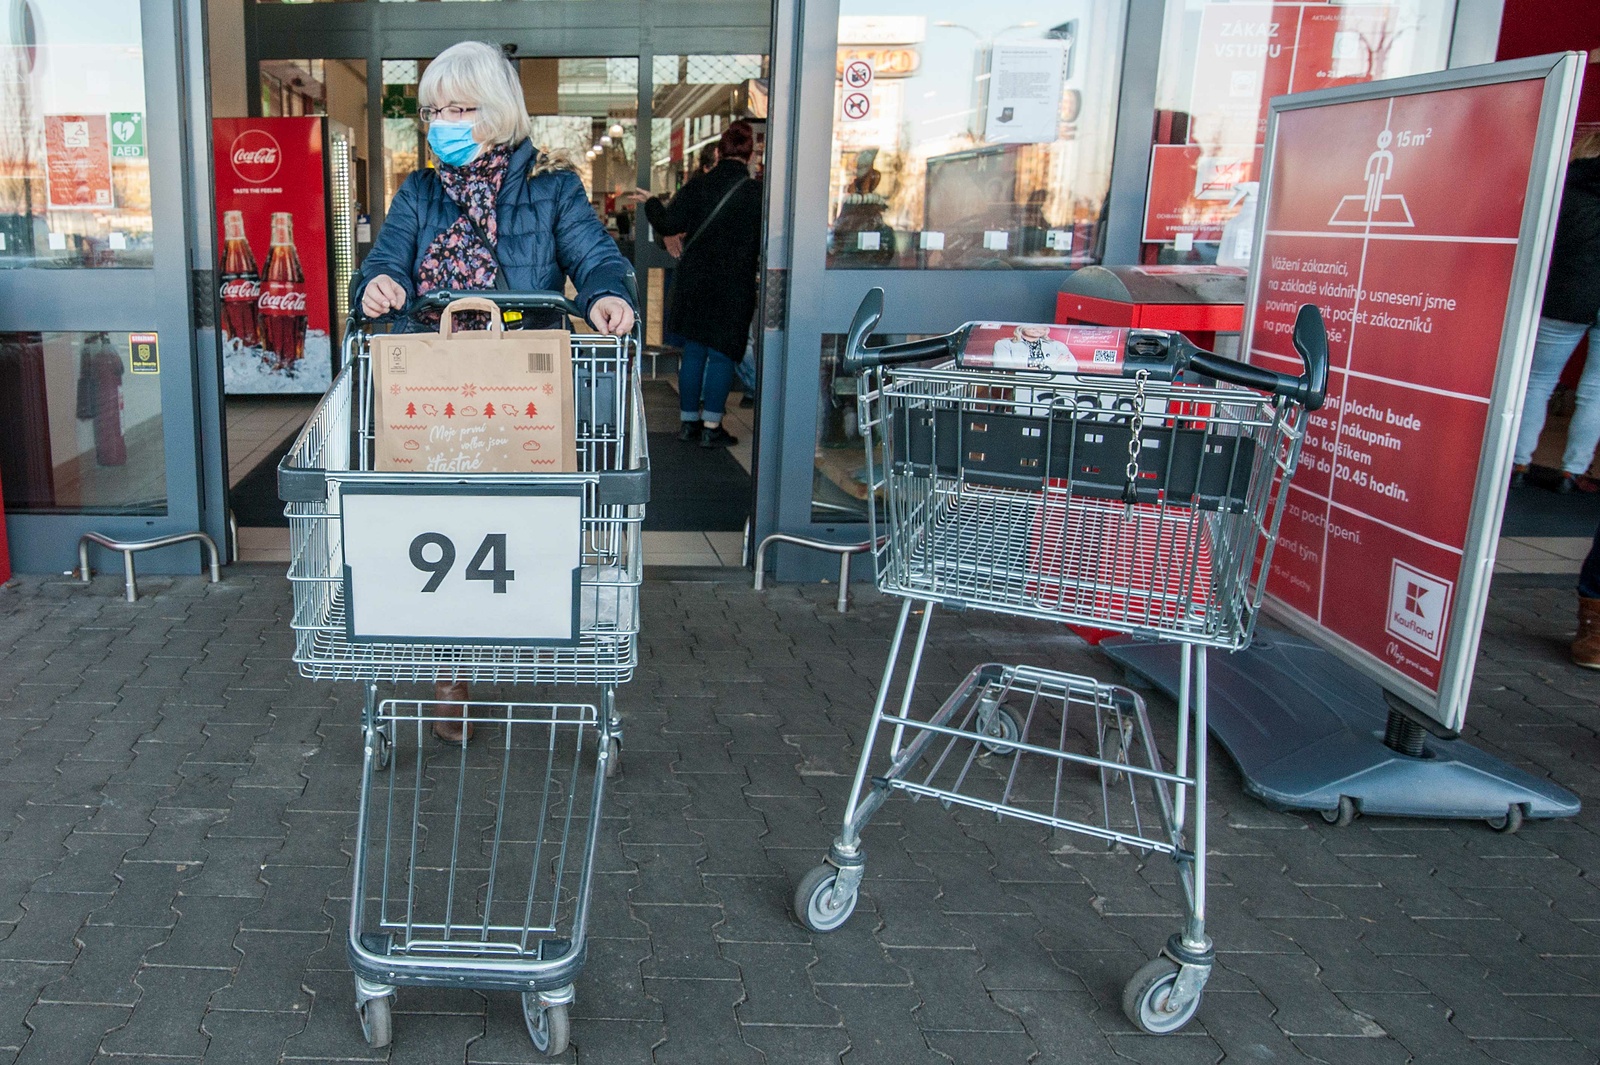 FOTOGALERIE: Do obchodu jen s nákupním vozíkem - Rokycanský deník